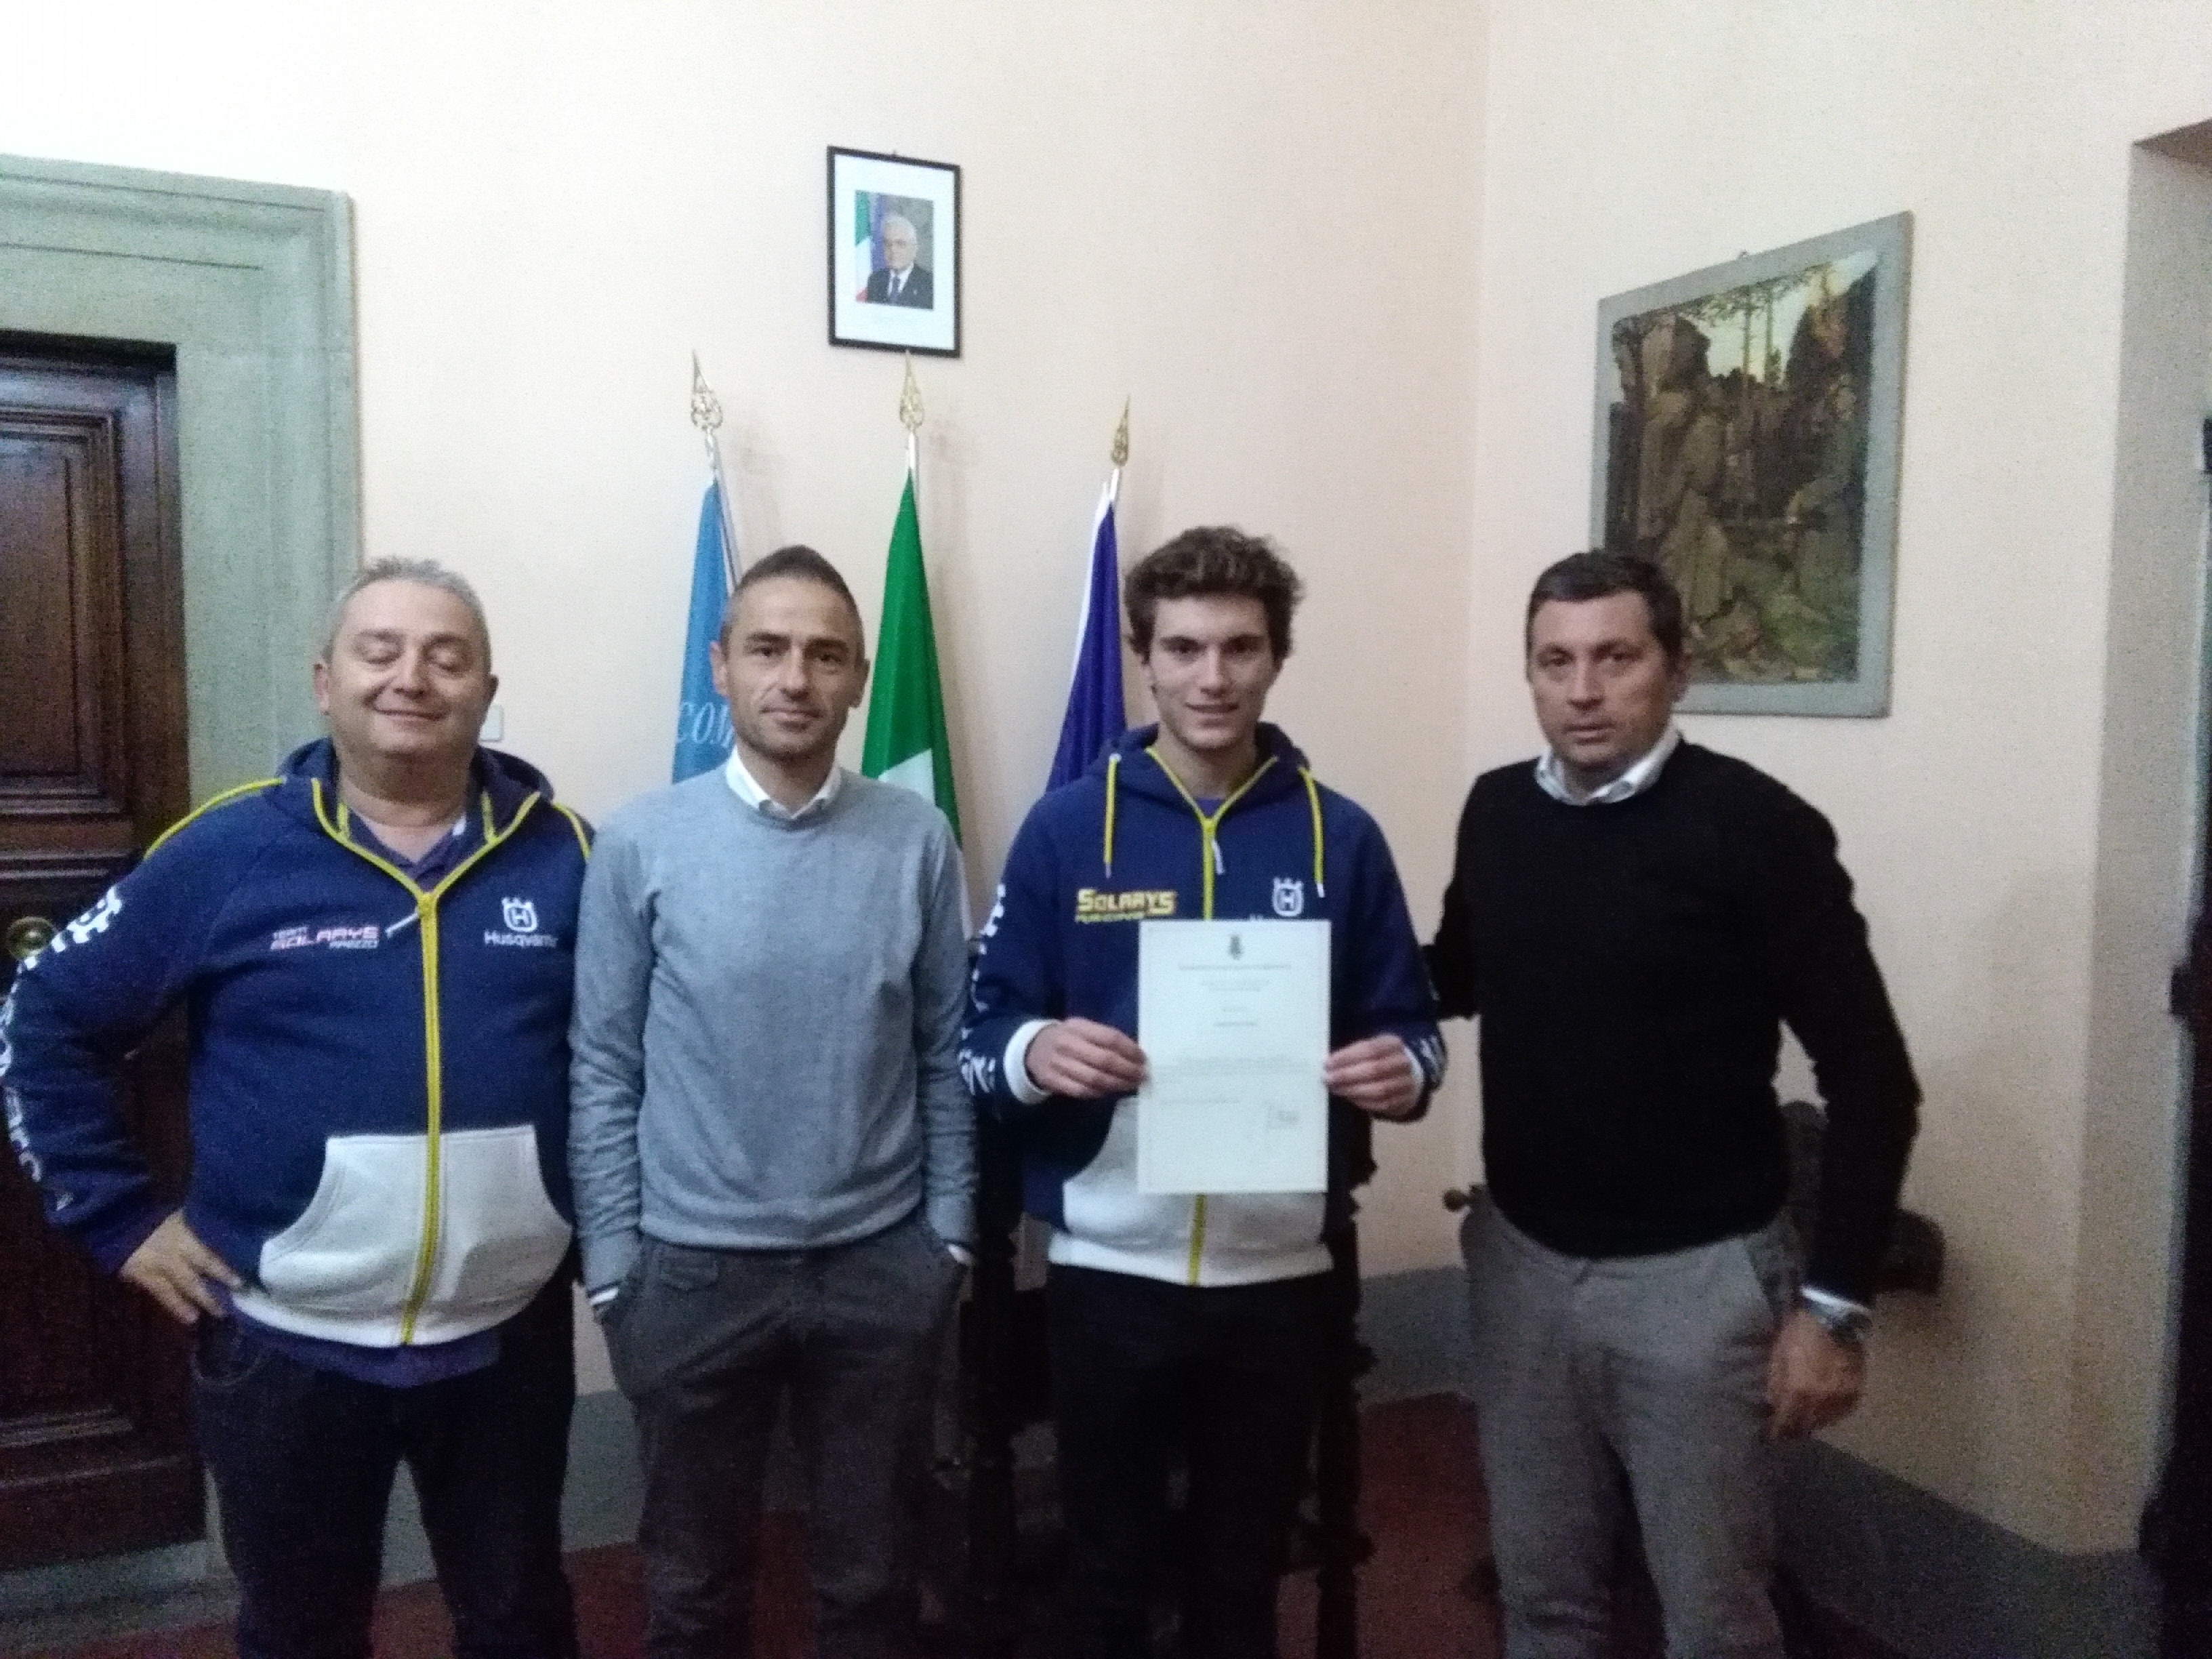 Tommaso Massi e Matteo Segantini, due sportivi castiglionesi premiati dall'Amministrazione